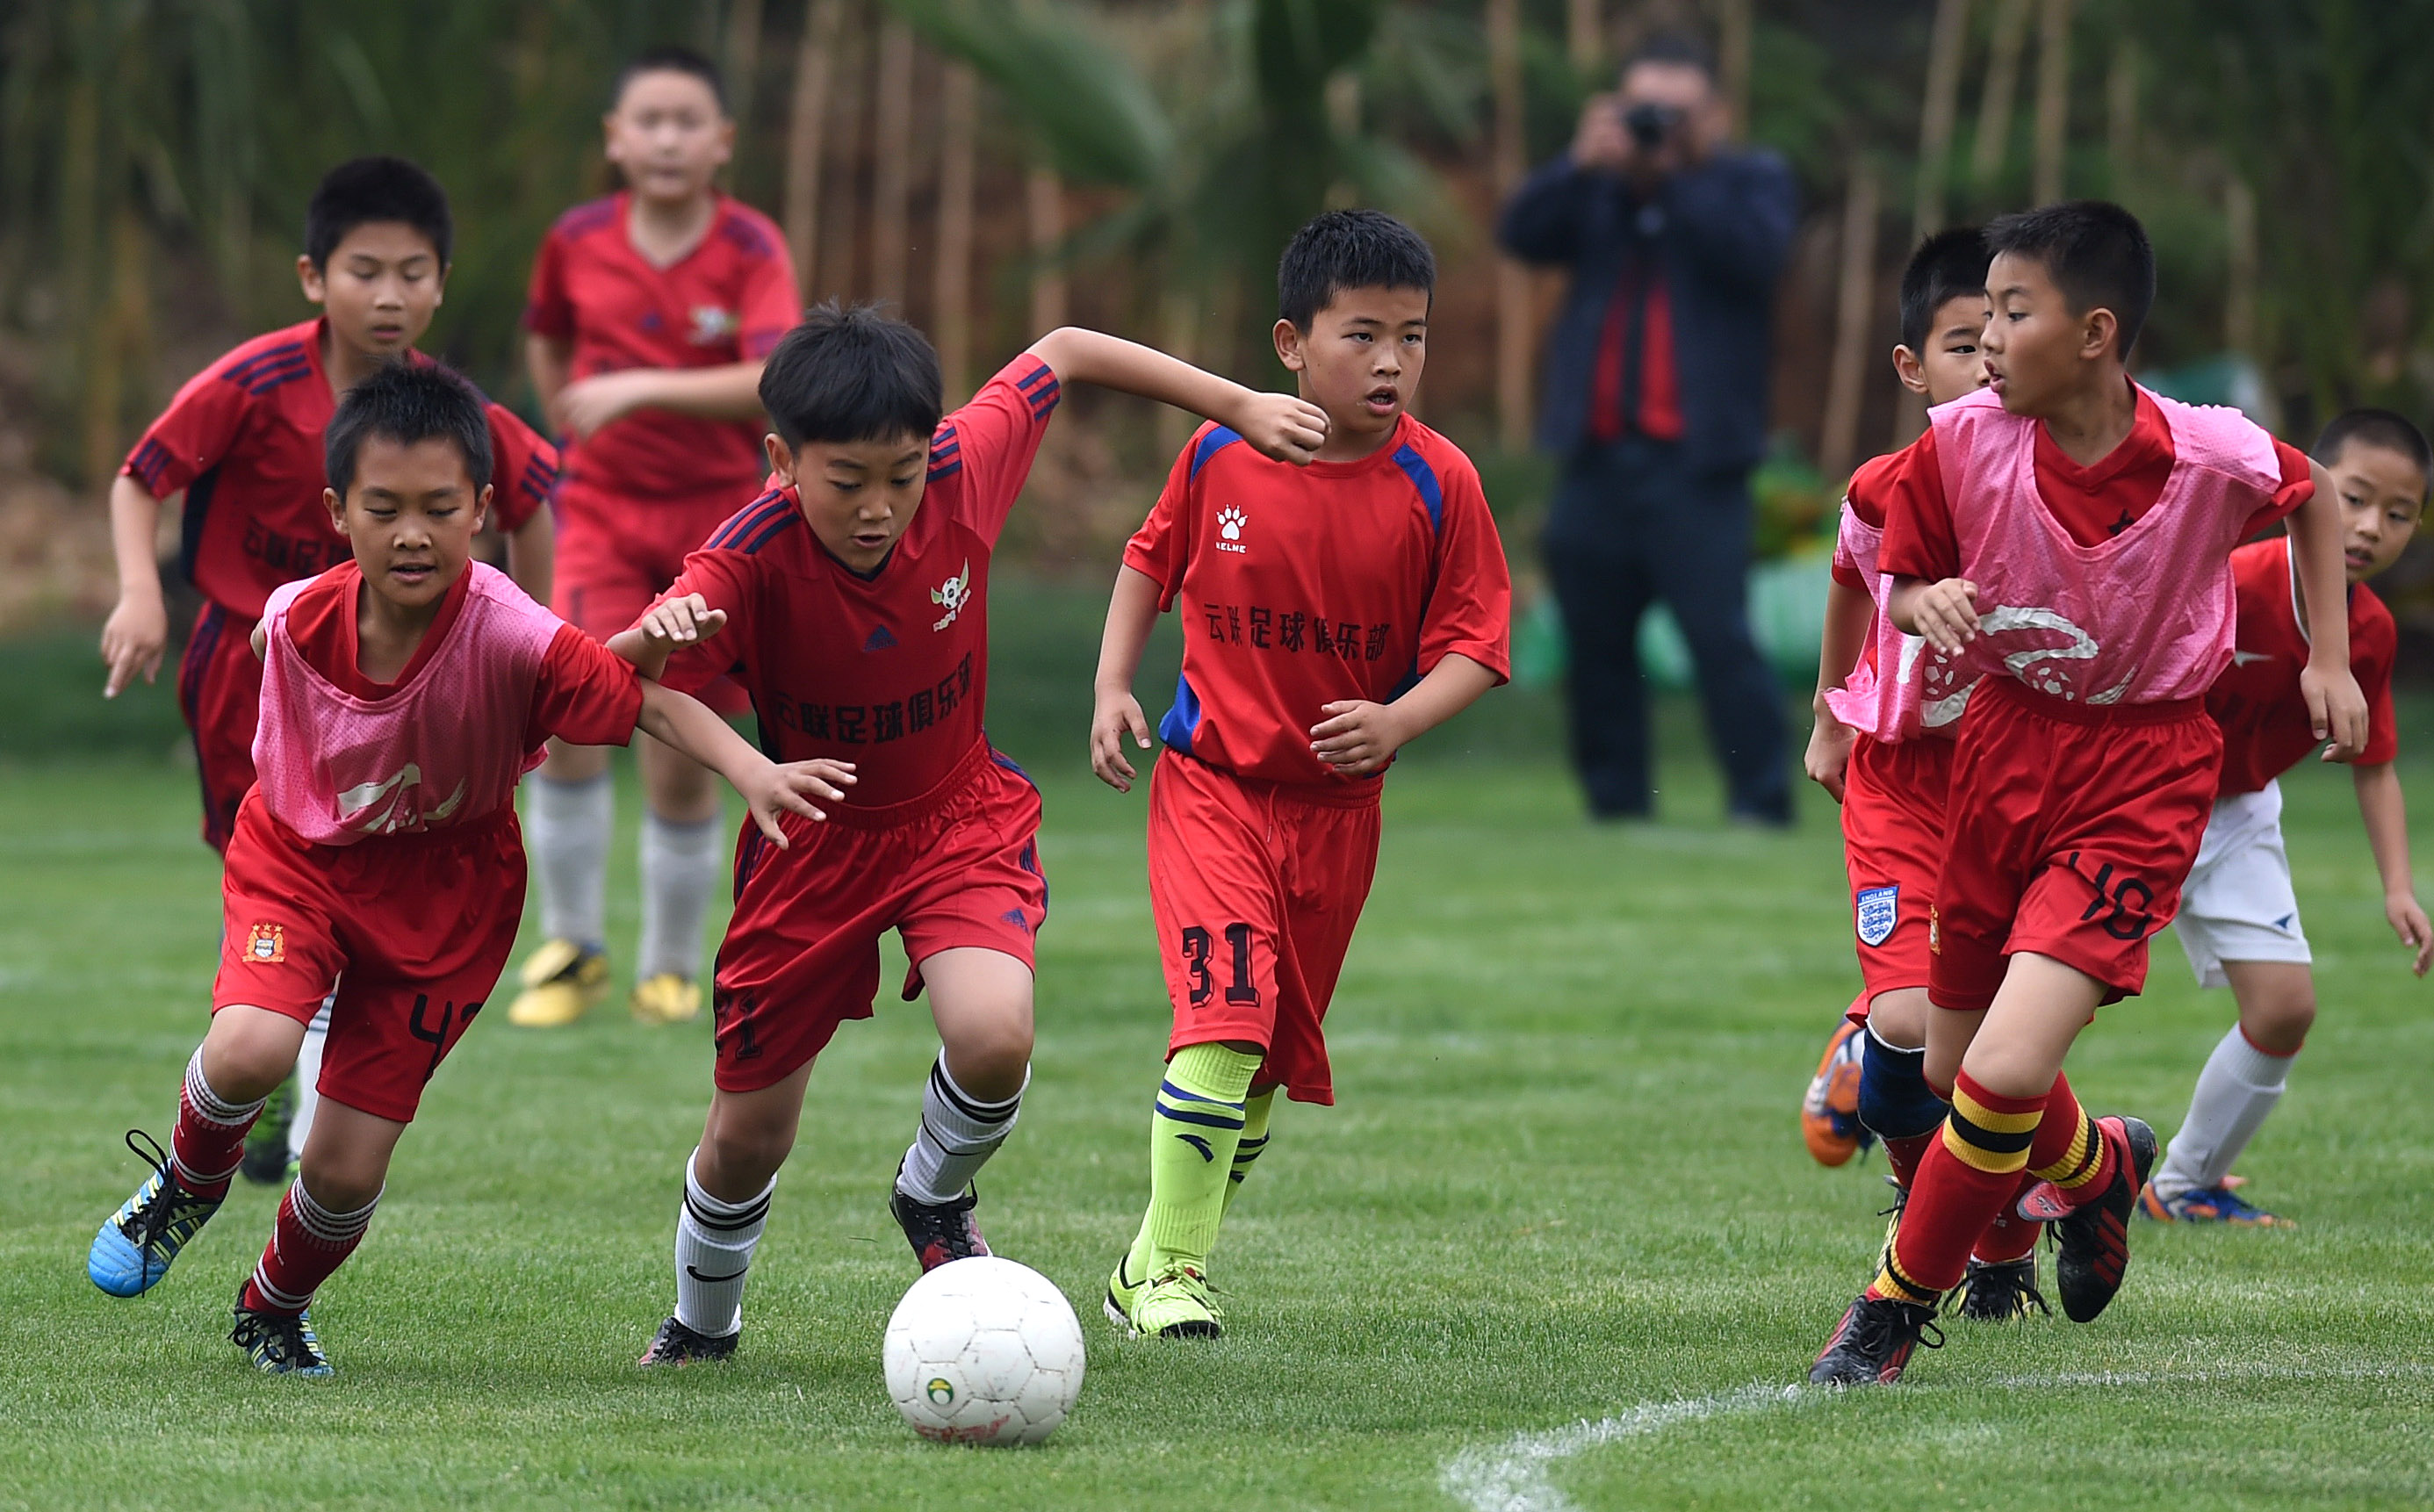 年新益杯亚洲展望昆明城市青少年足球联赛今